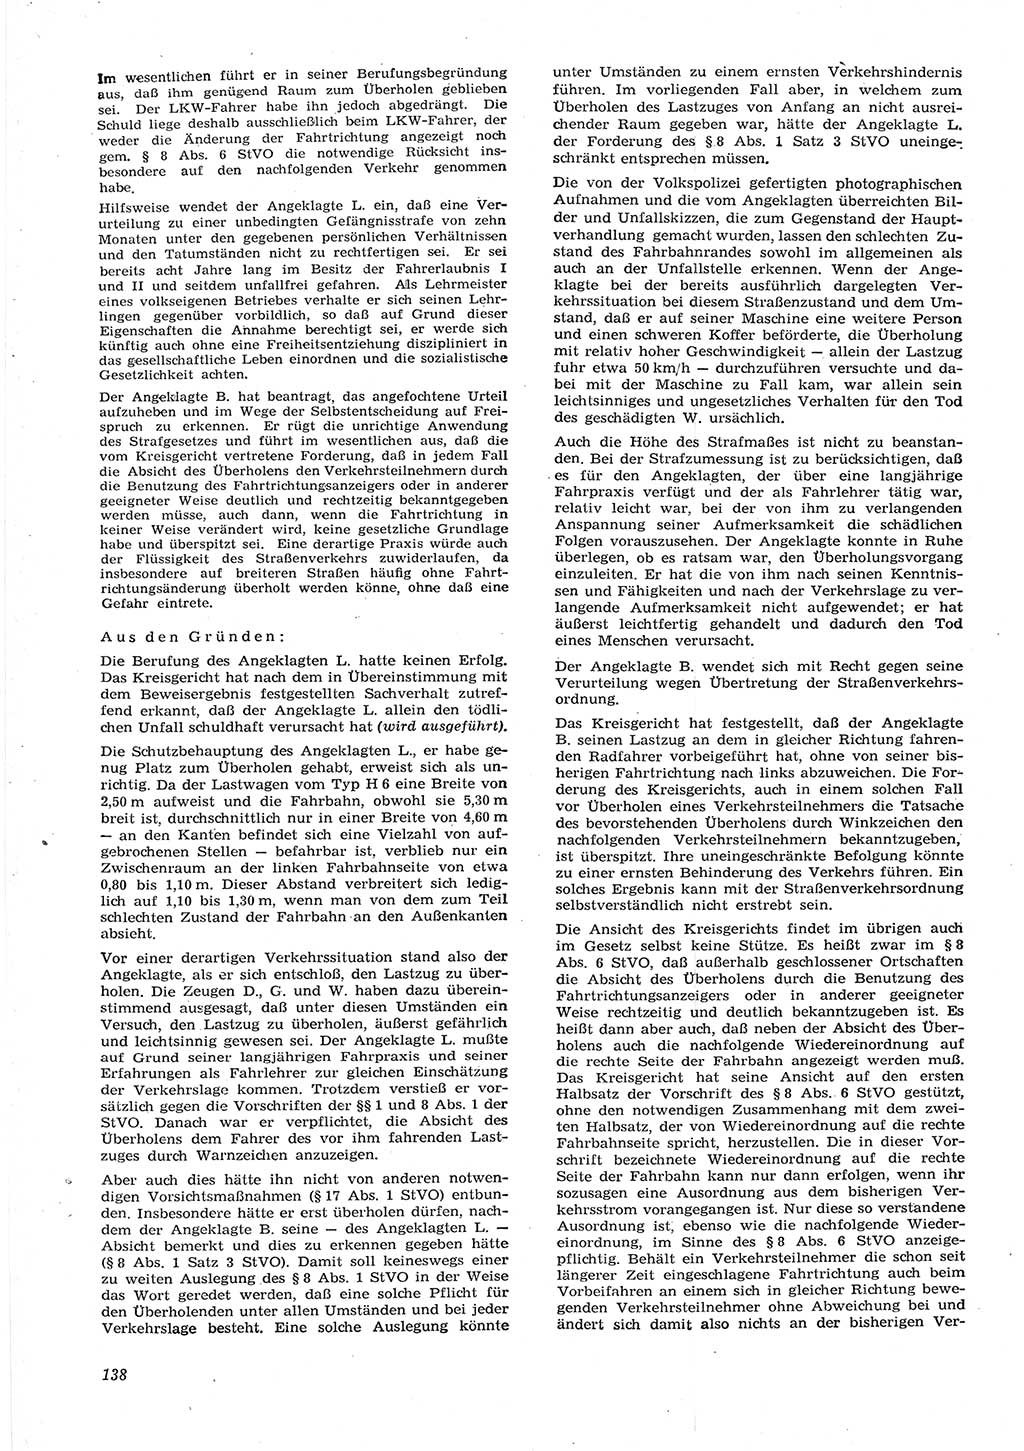 Neue Justiz (NJ), Zeitschrift für Recht und Rechtswissenschaft [Deutsche Demokratische Republik (DDR)], 15. Jahrgang 1961, Seite 138 (NJ DDR 1961, S. 138)